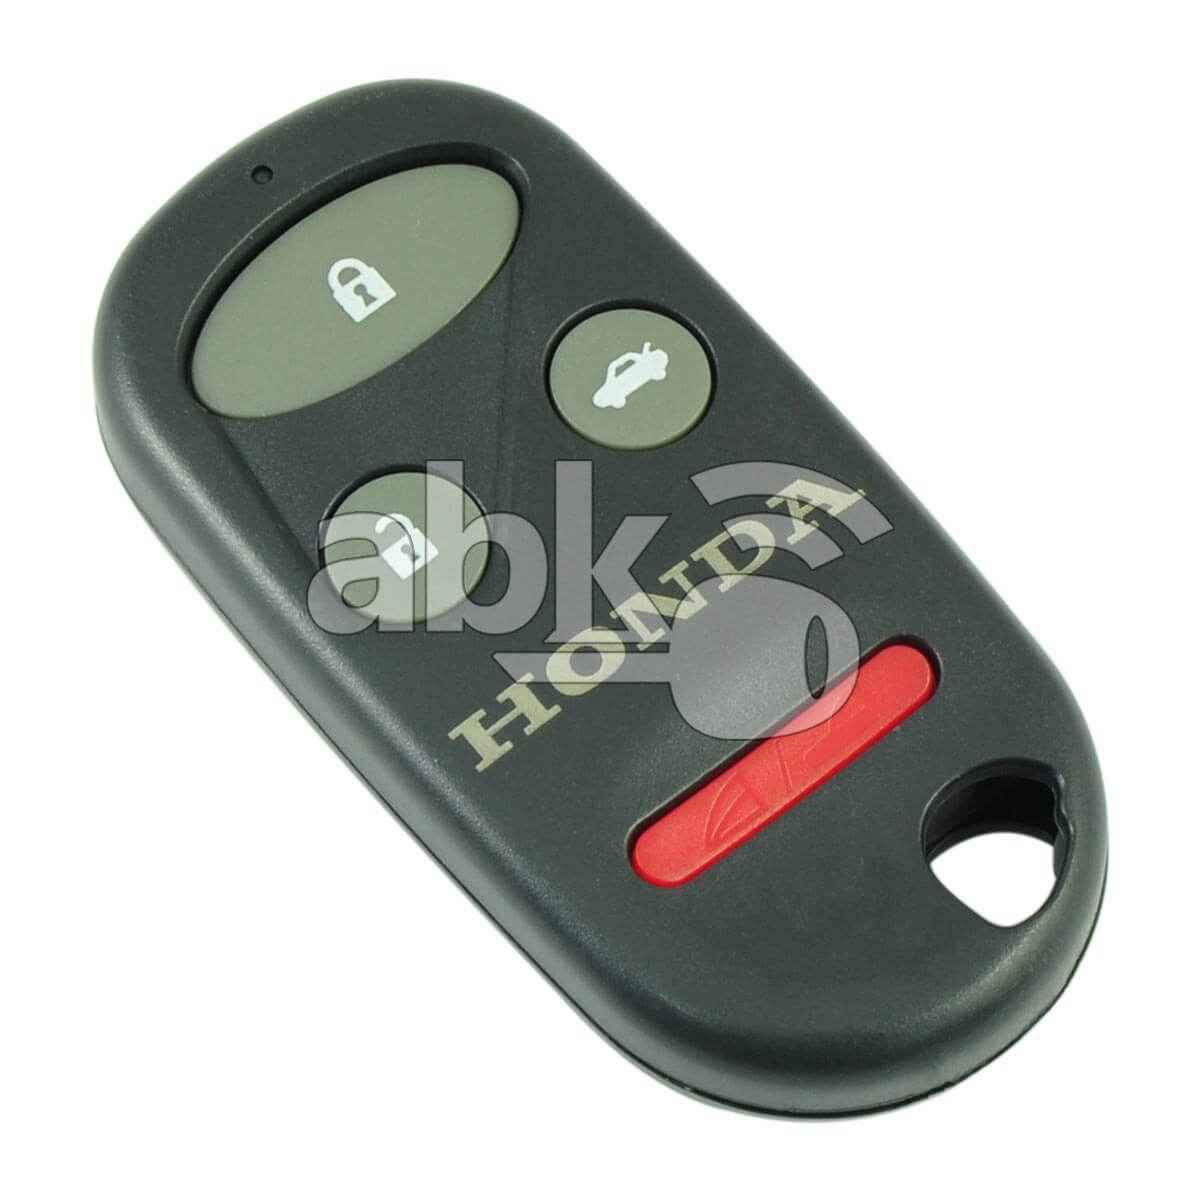 Honda 1998+ Remote Control Cover 4Buttons - ABK-843 - ABKEYS.COM